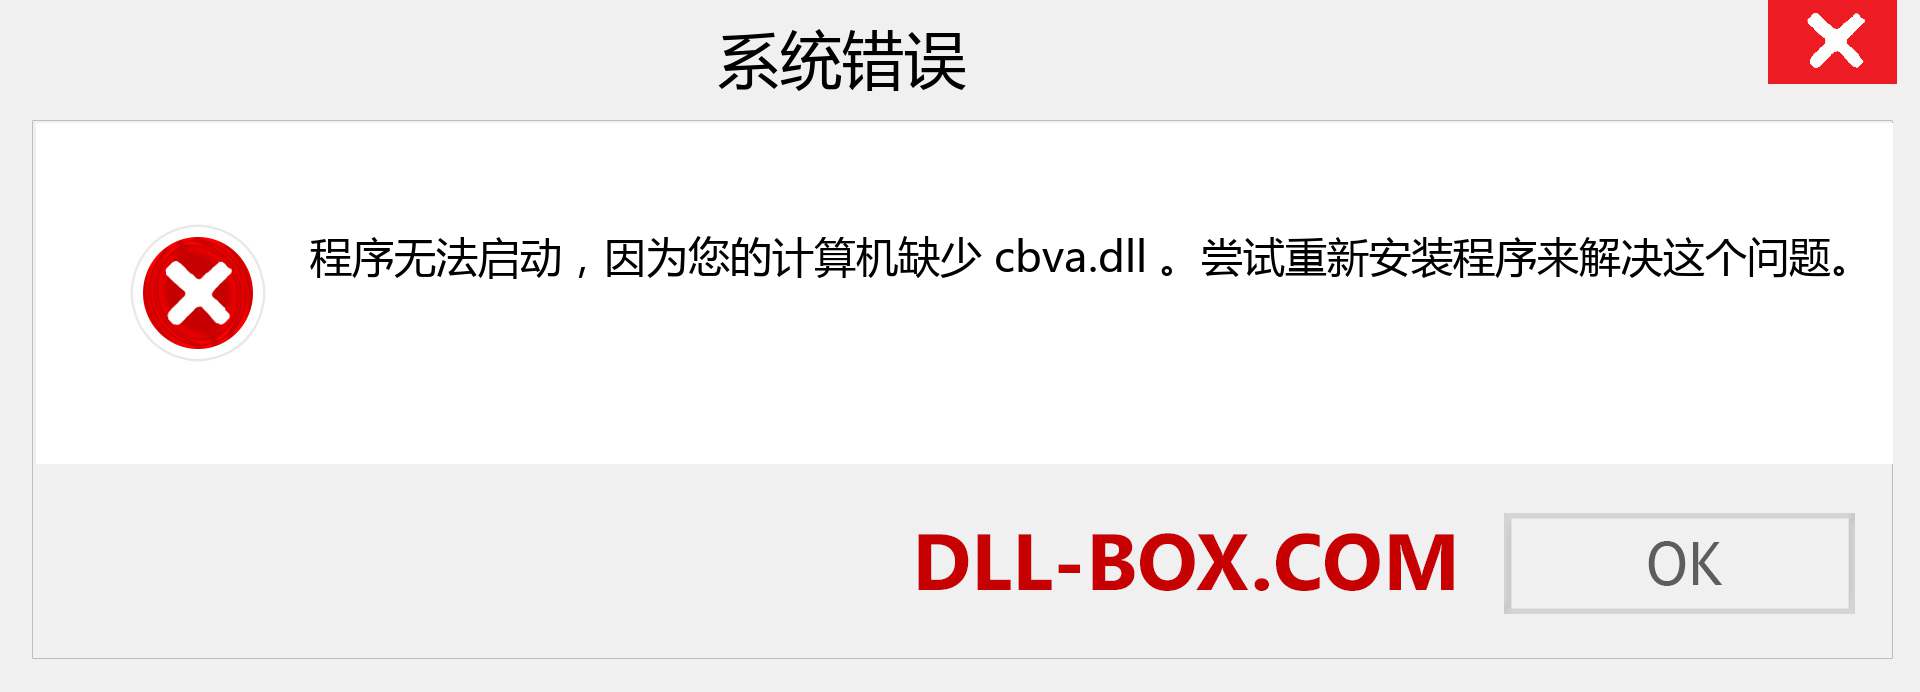 cbva.dll 文件丢失？。 适用于 Windows 7、8、10 的下载 - 修复 Windows、照片、图像上的 cbva dll 丢失错误